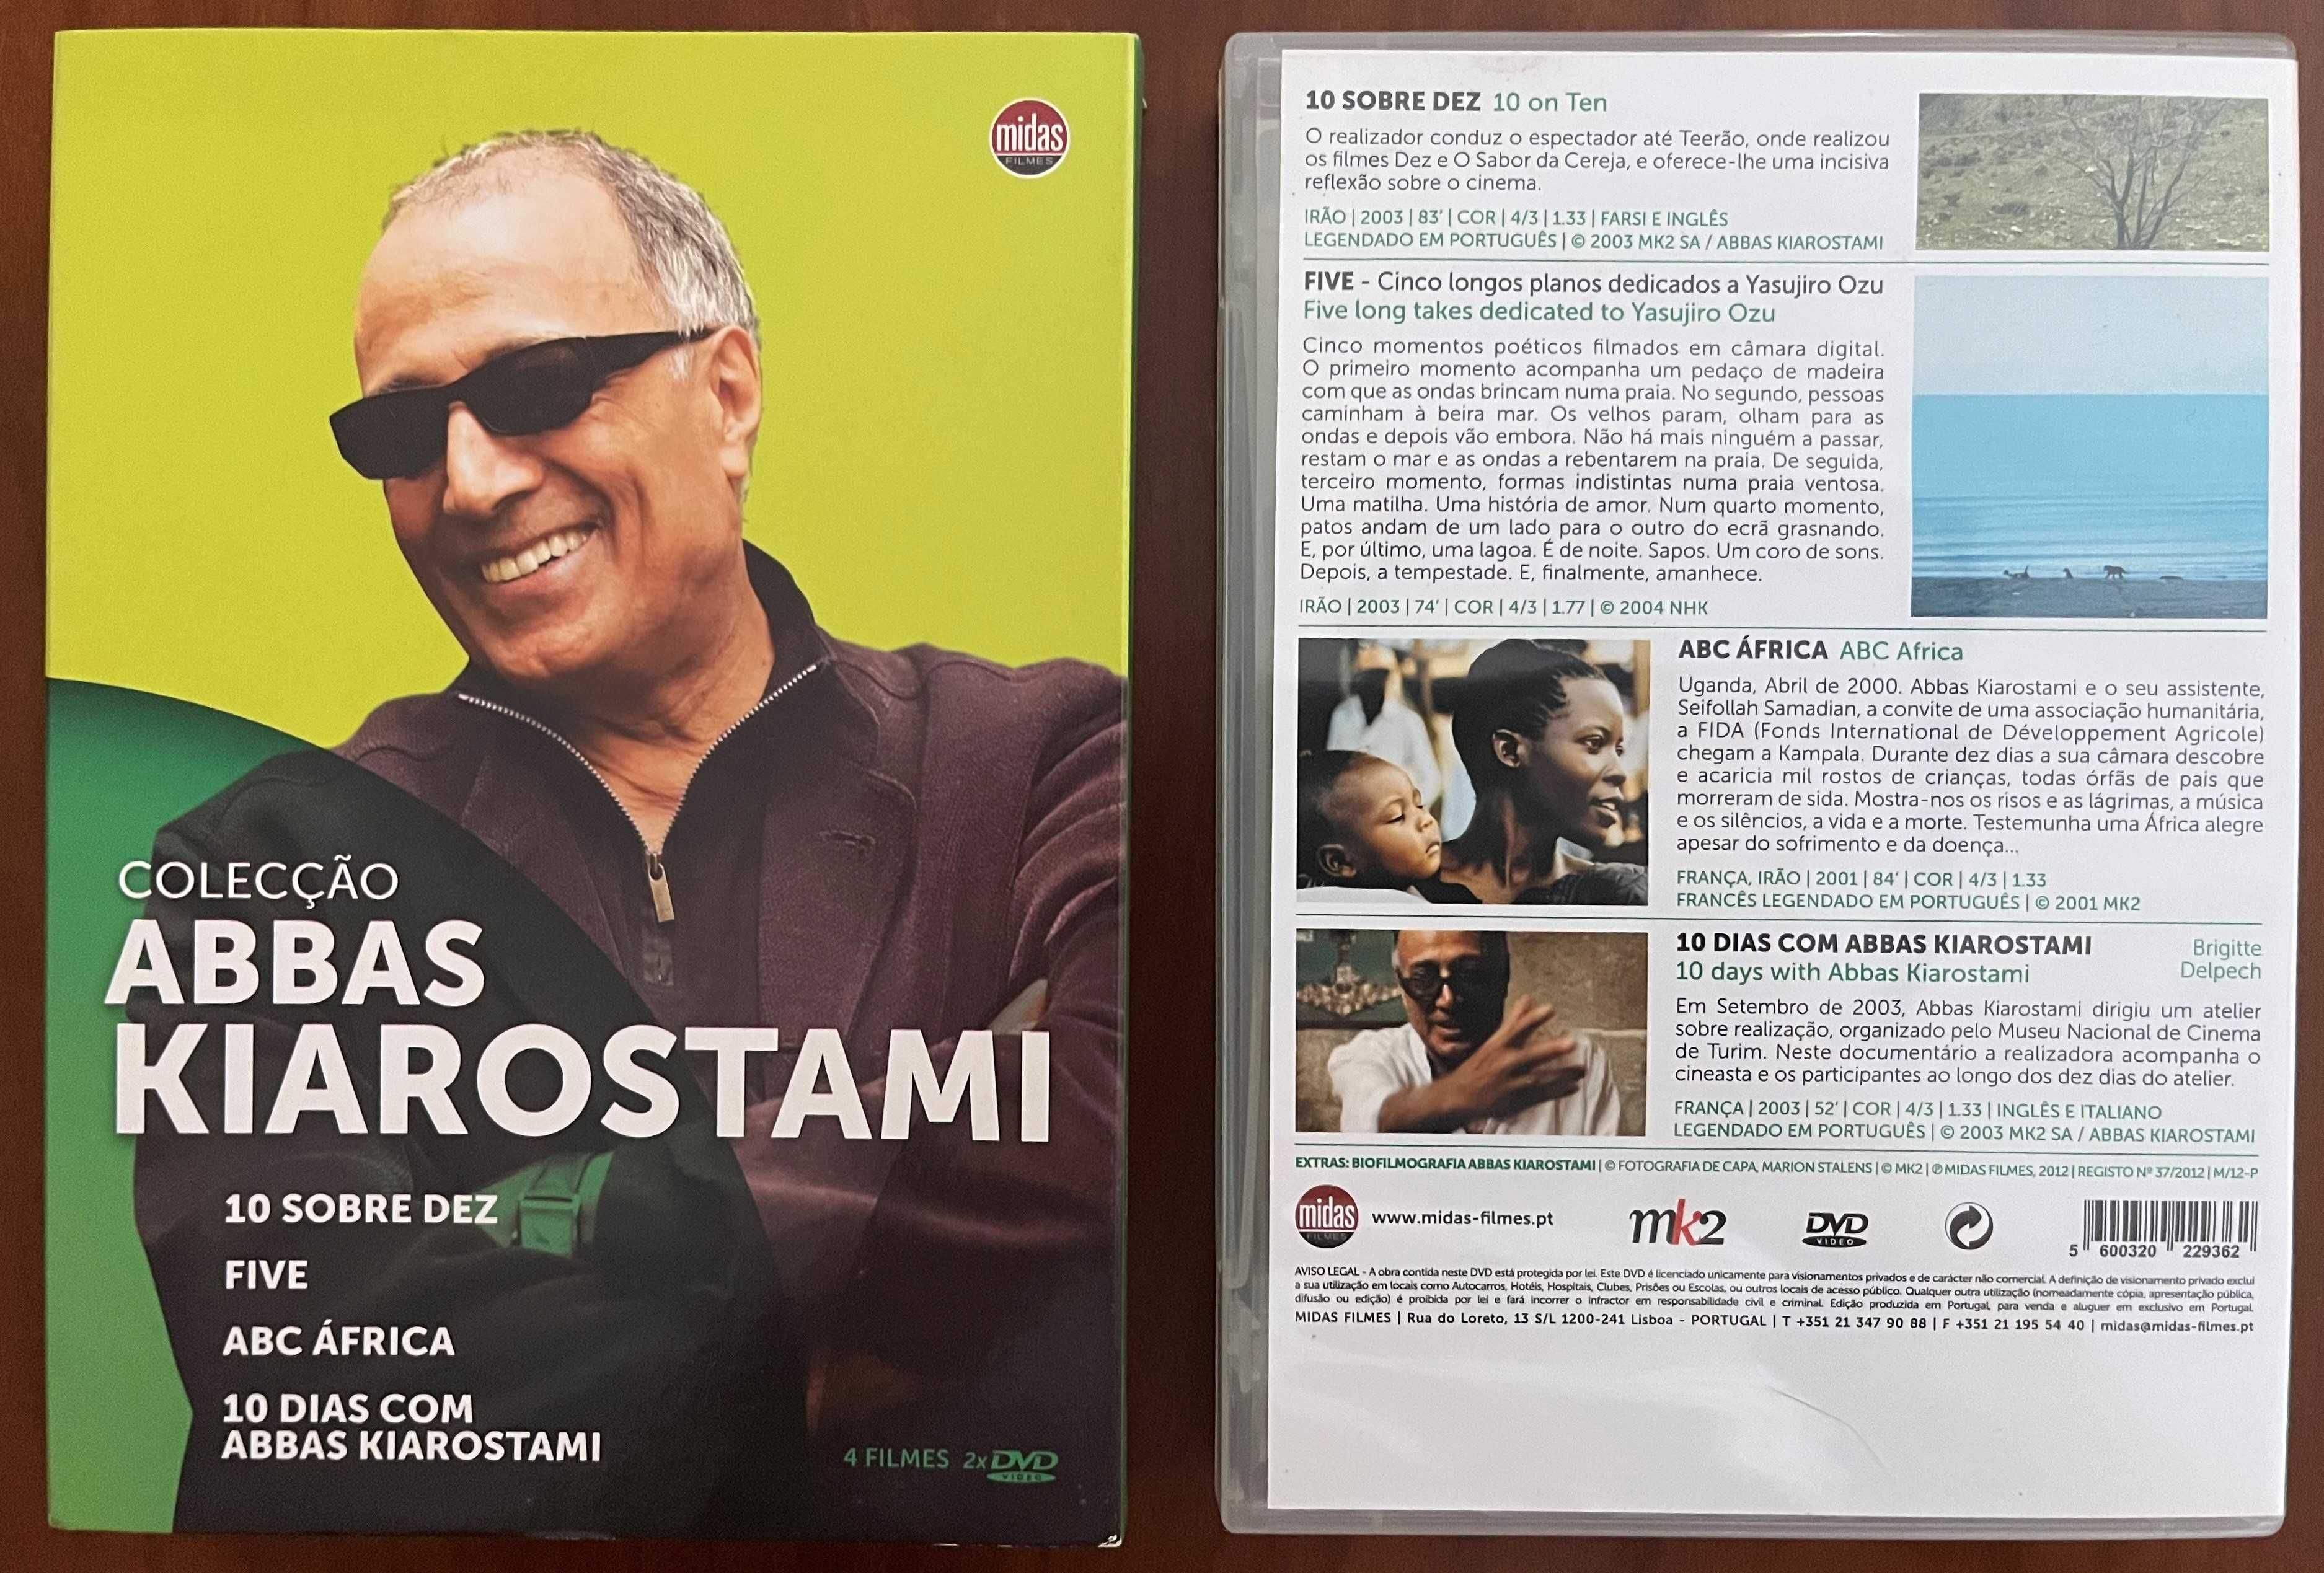 DVD "Colecção Abbas Kiarostami"